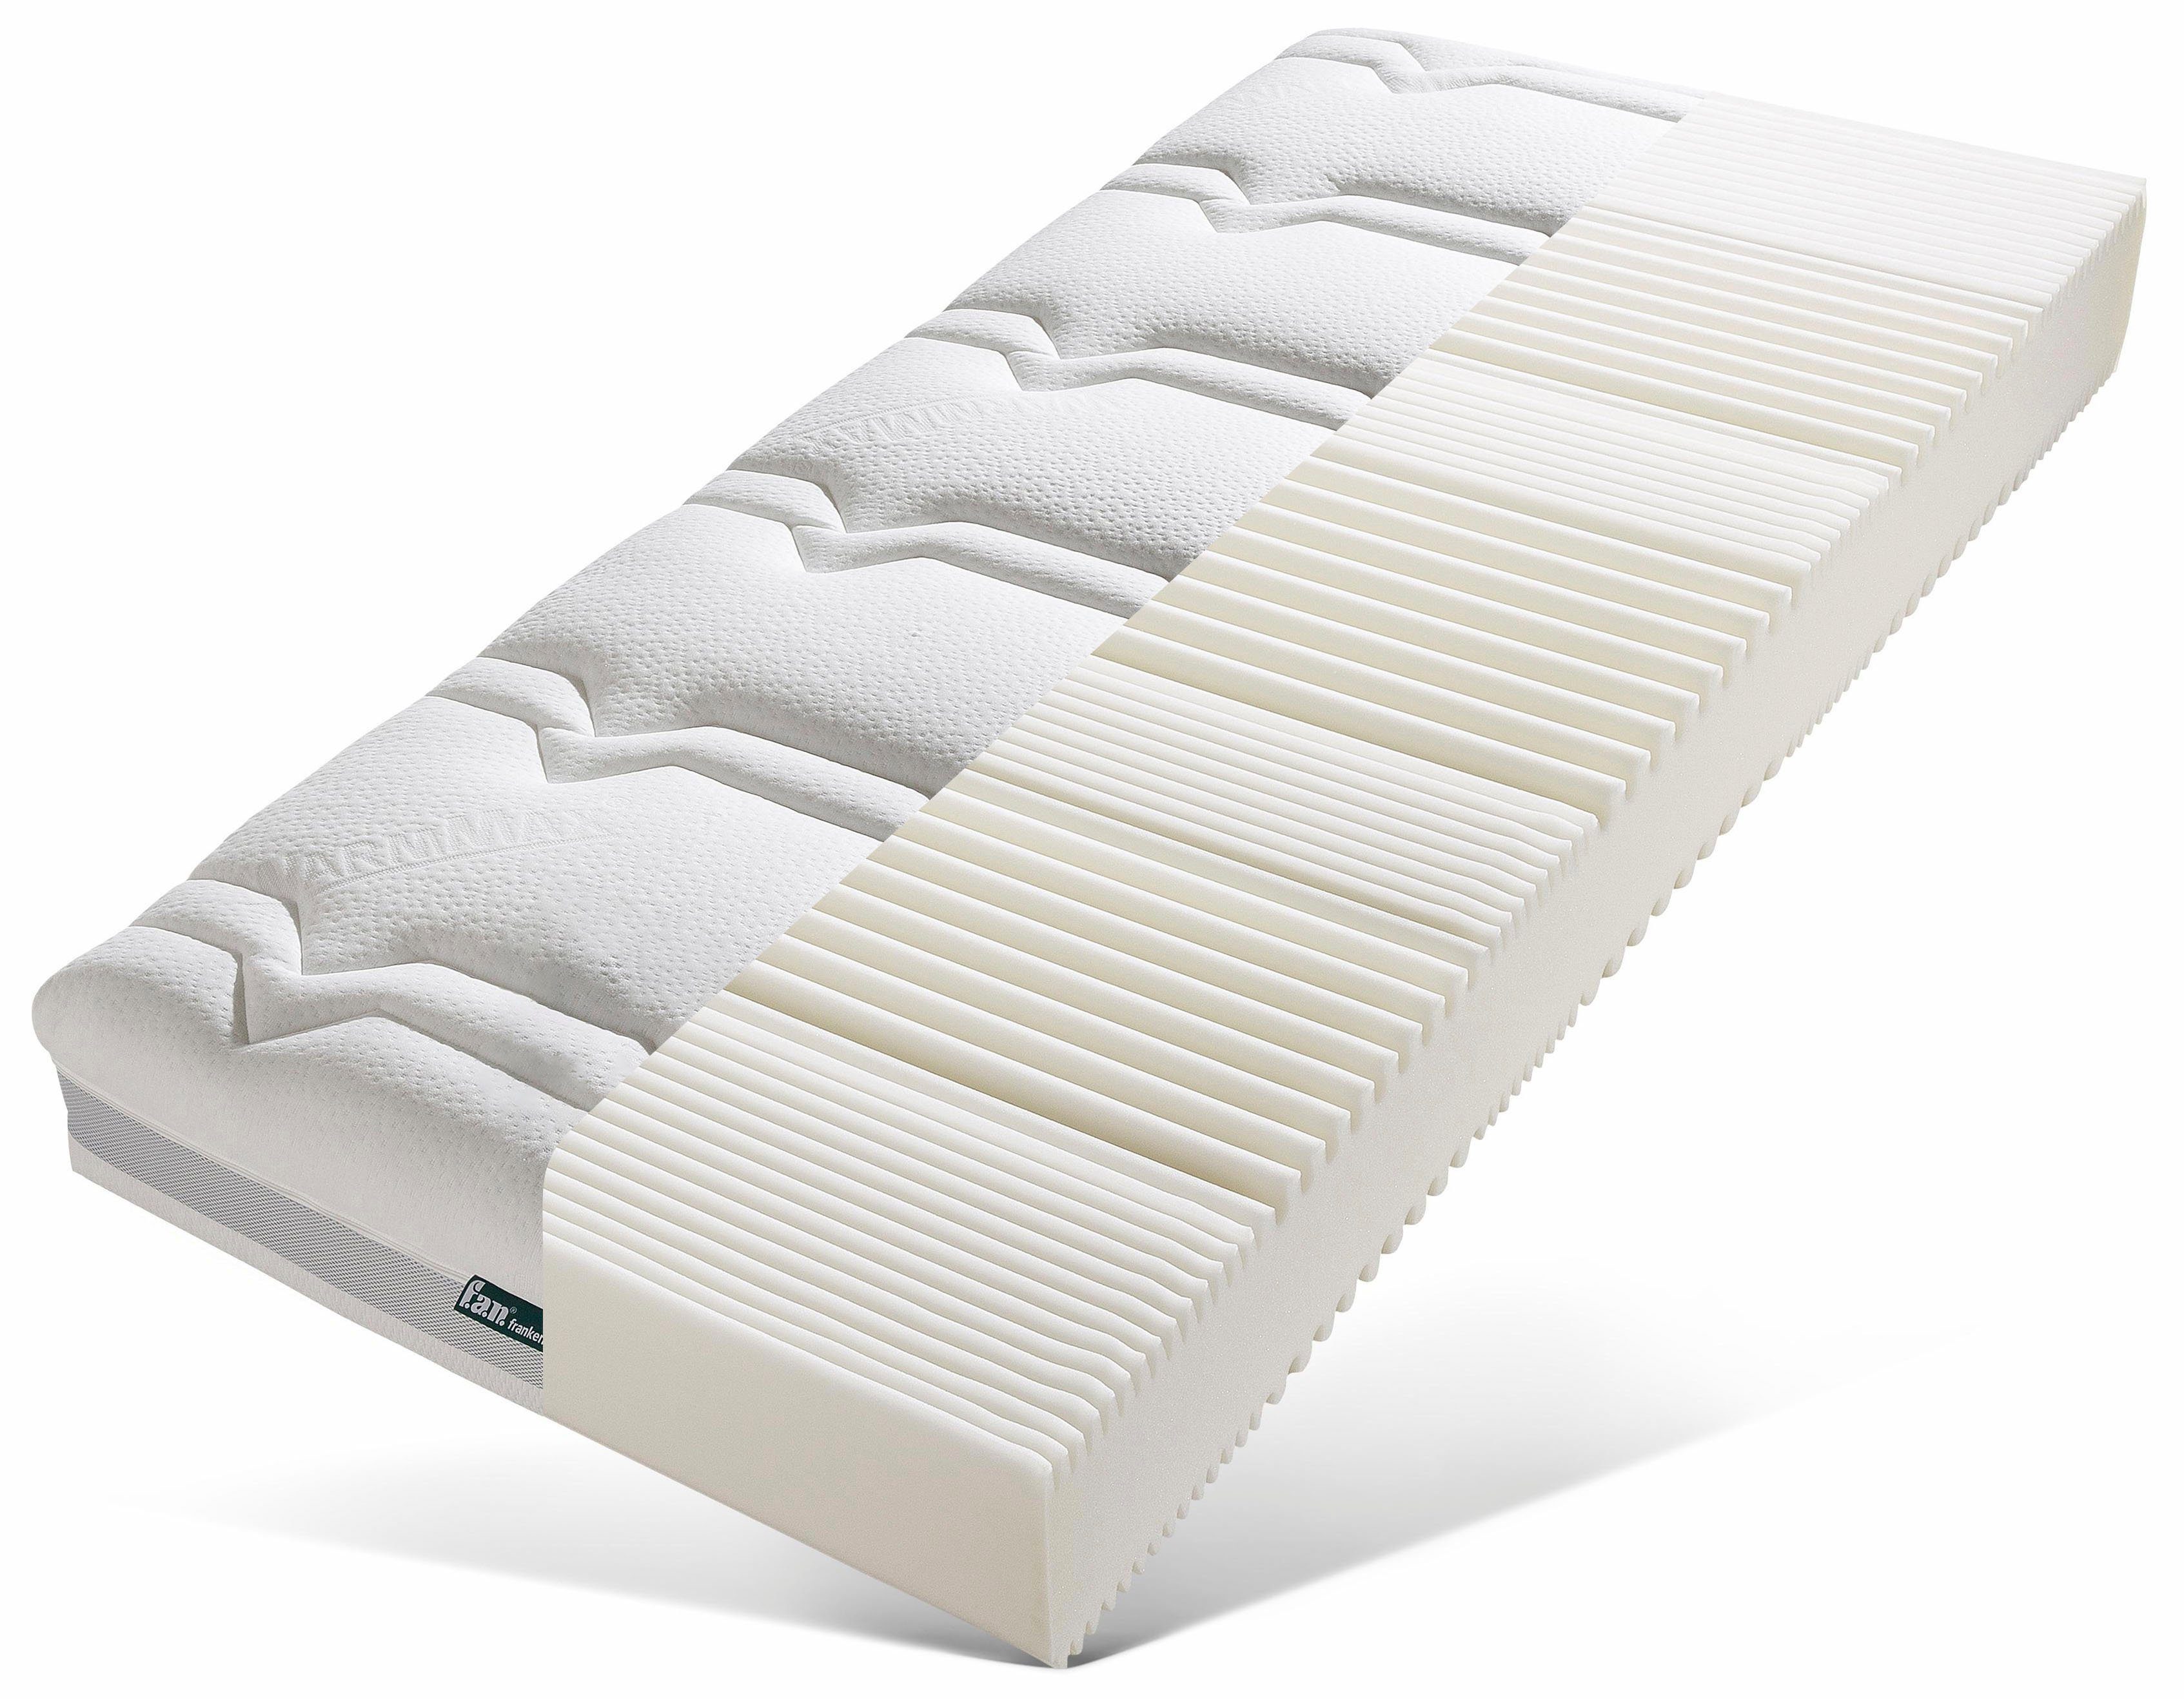 Komfortschaummatratze Mabona S, f.a.n. Schlafkomfort, 23 cm hoch, bekannt aus dem TV! Erhältlich in 4 unterschiedlichen Bezugsvarianten!